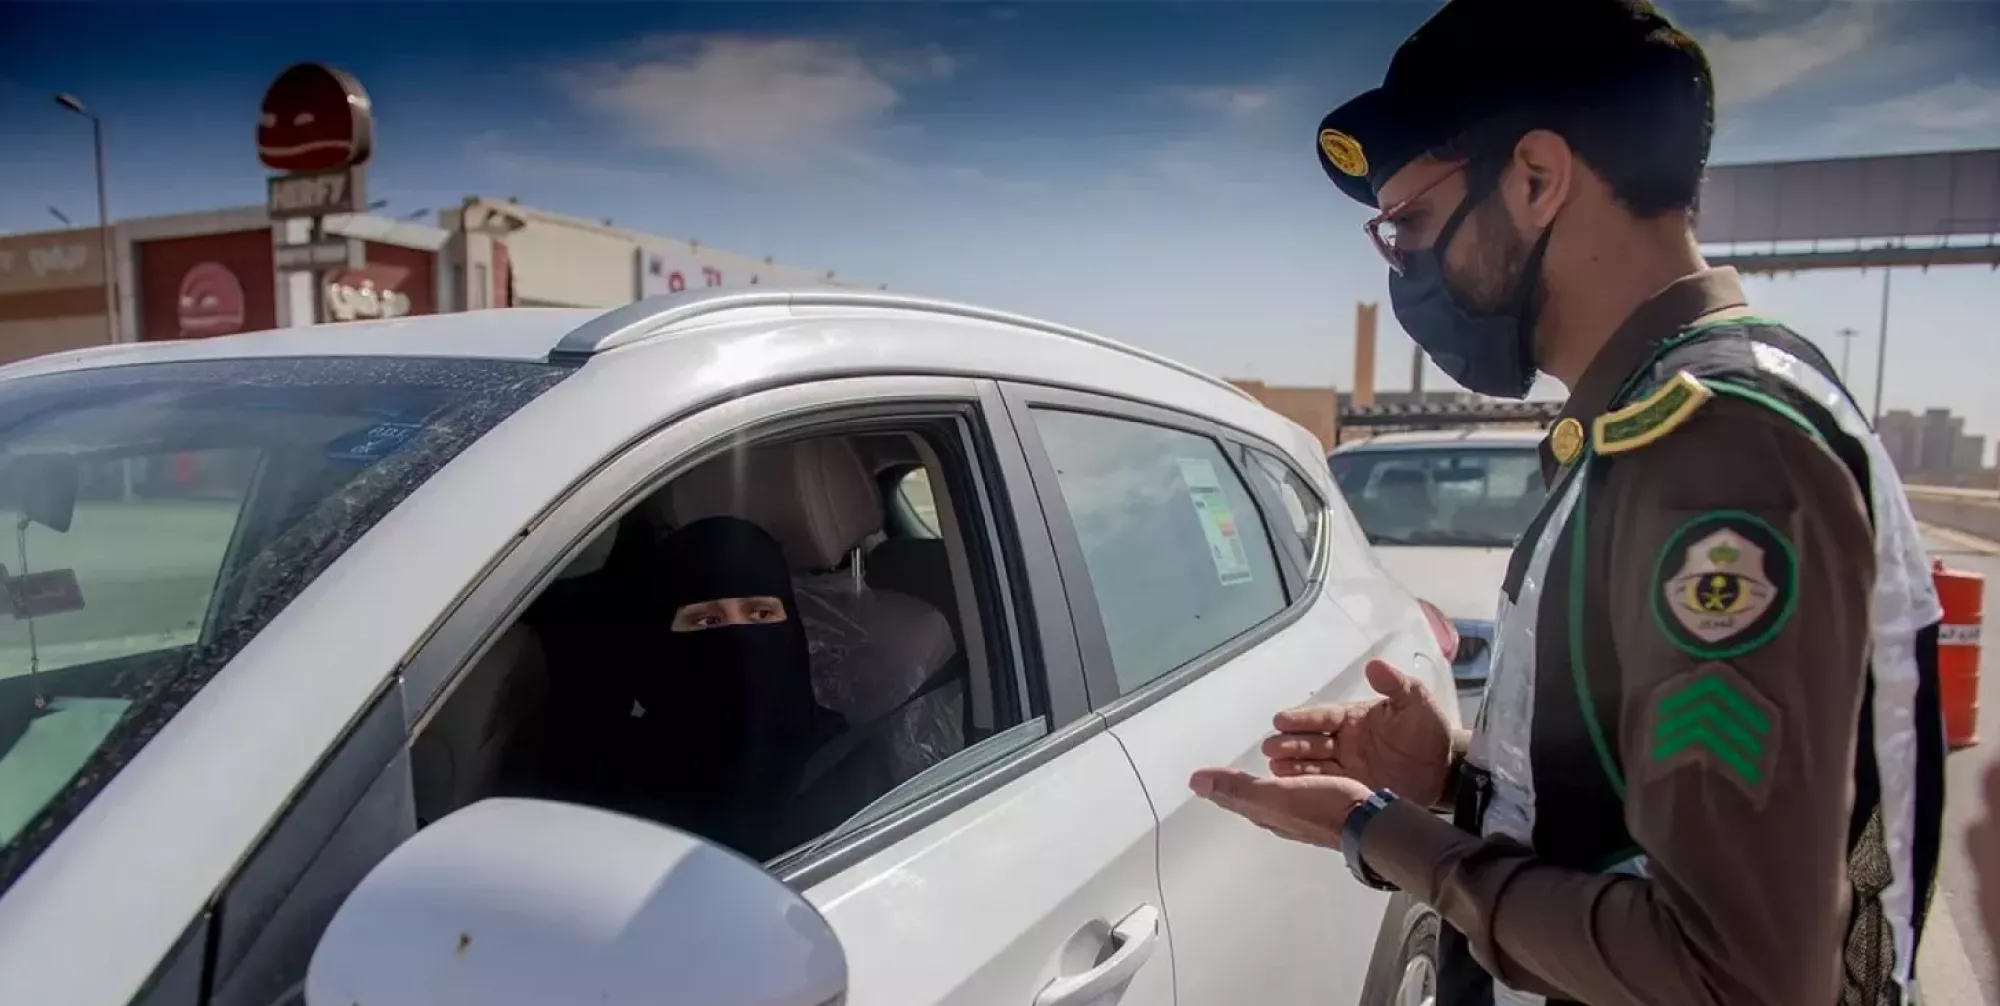 المرور السعودي يكشف هل يمكن نقل ملكية سيارة وعليها مخالفات أم لا